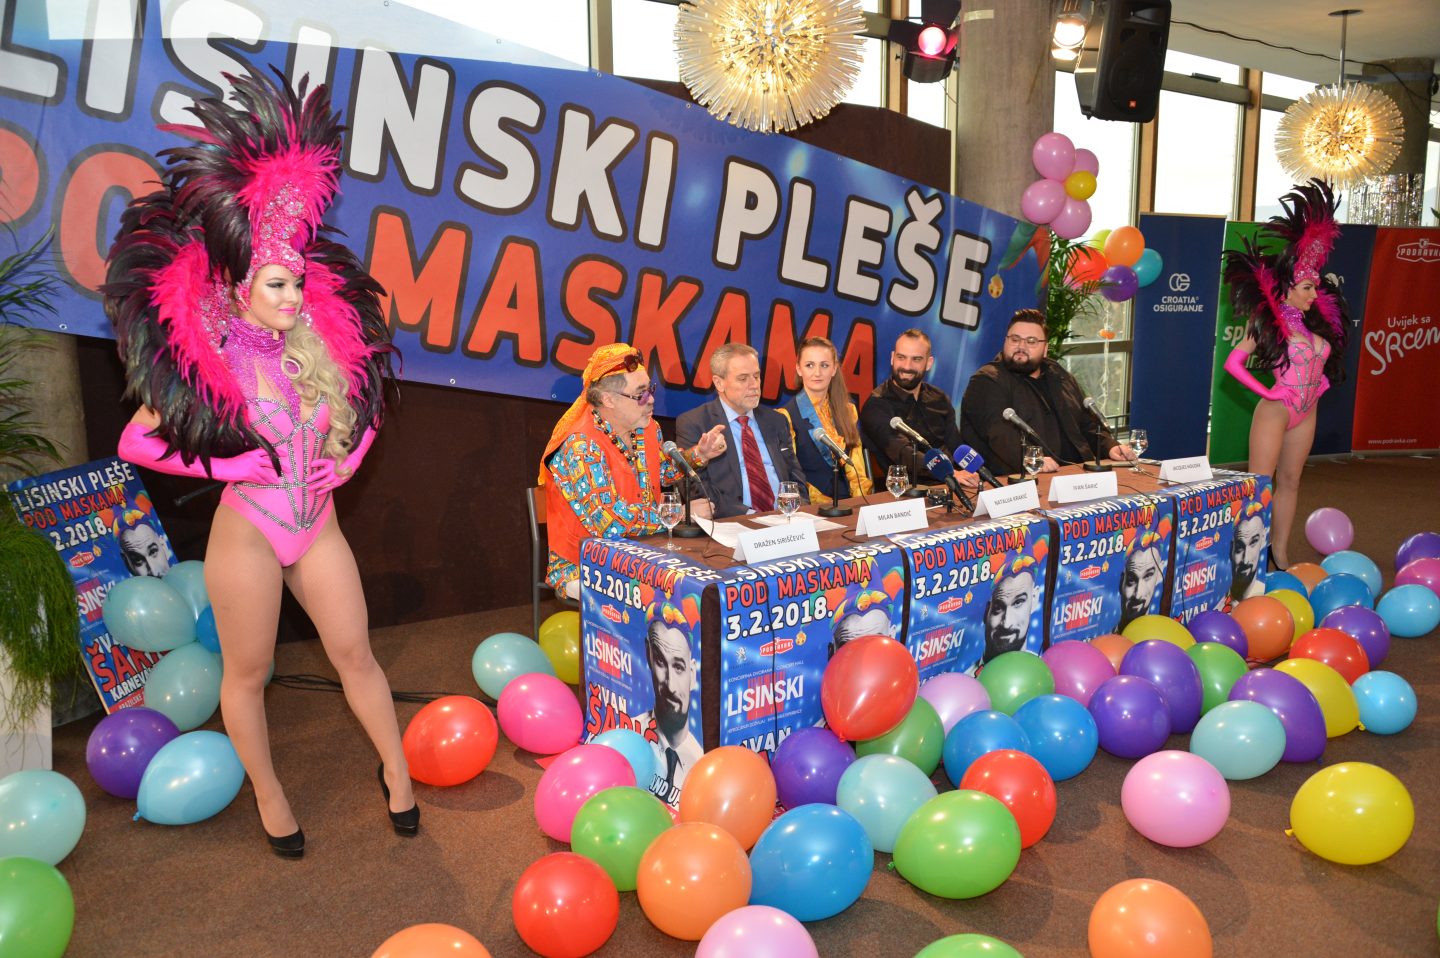 Najavljen tradicionalni maskenbal “Lisinski pleše pod maskama”